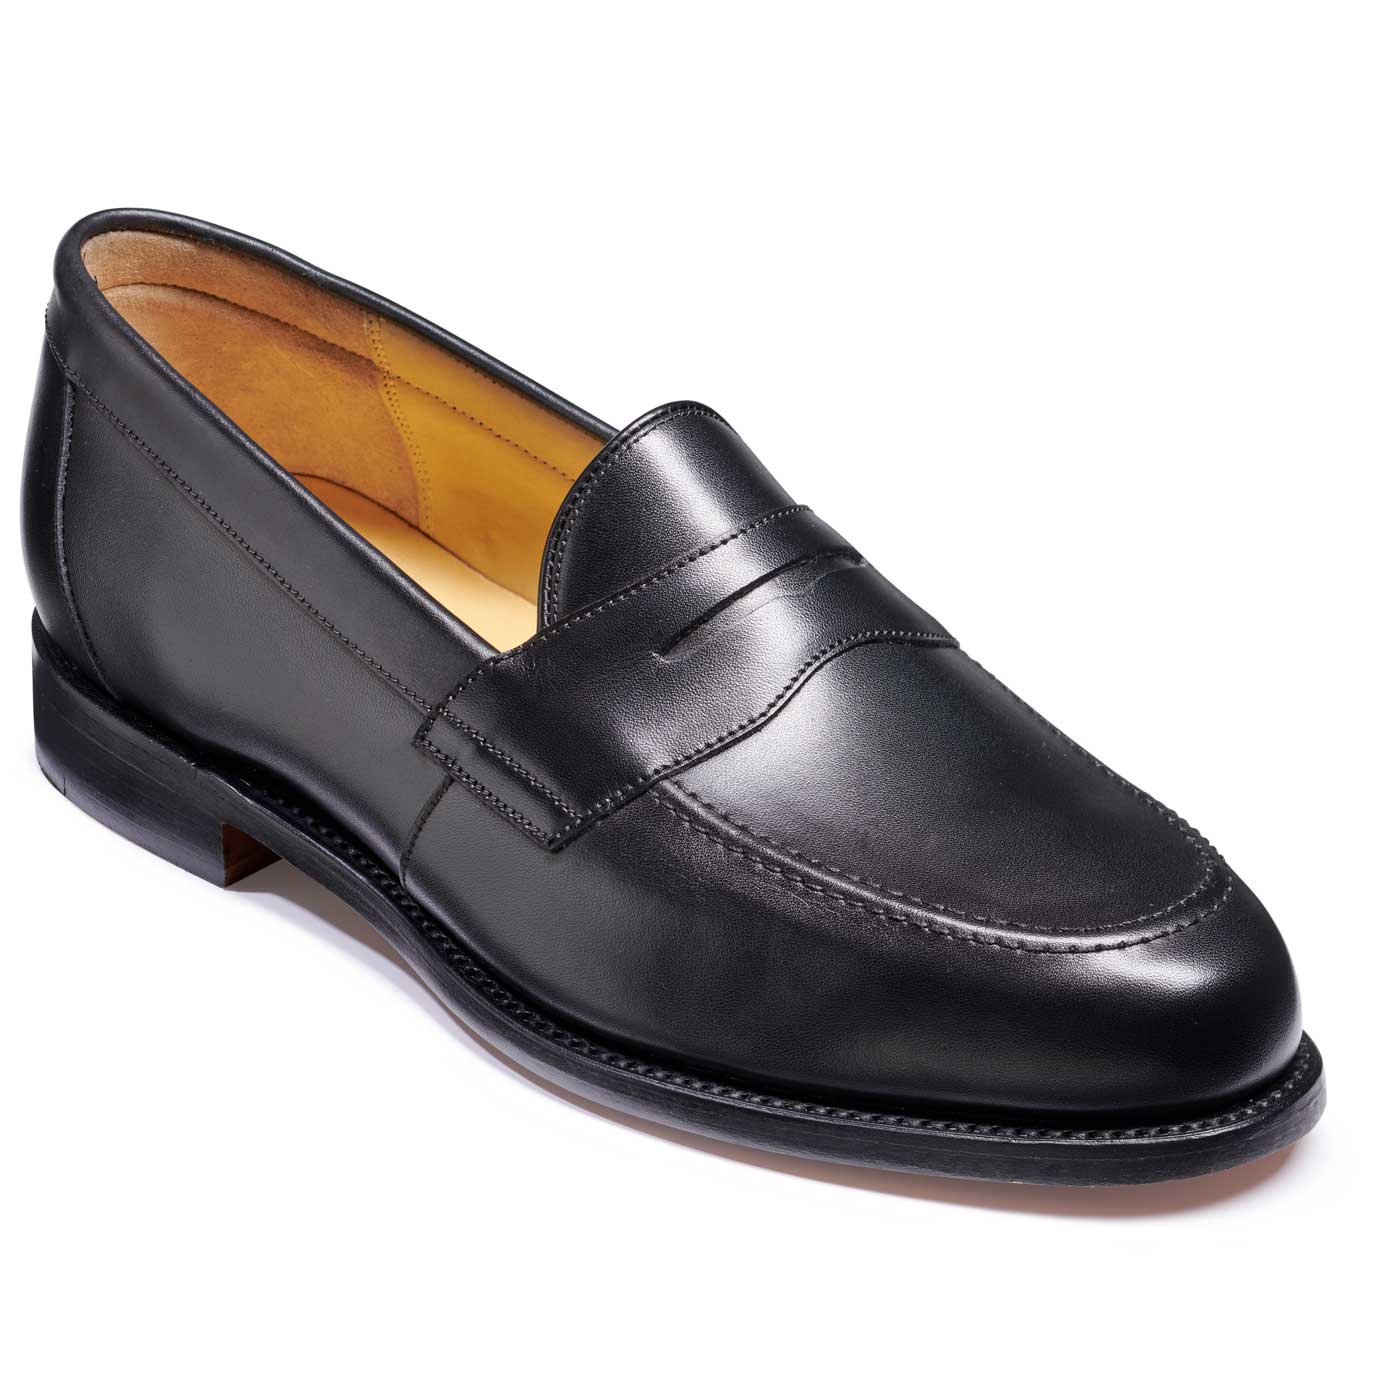 Barker Portsmouth Shoes - Penny loafer - Black Calf